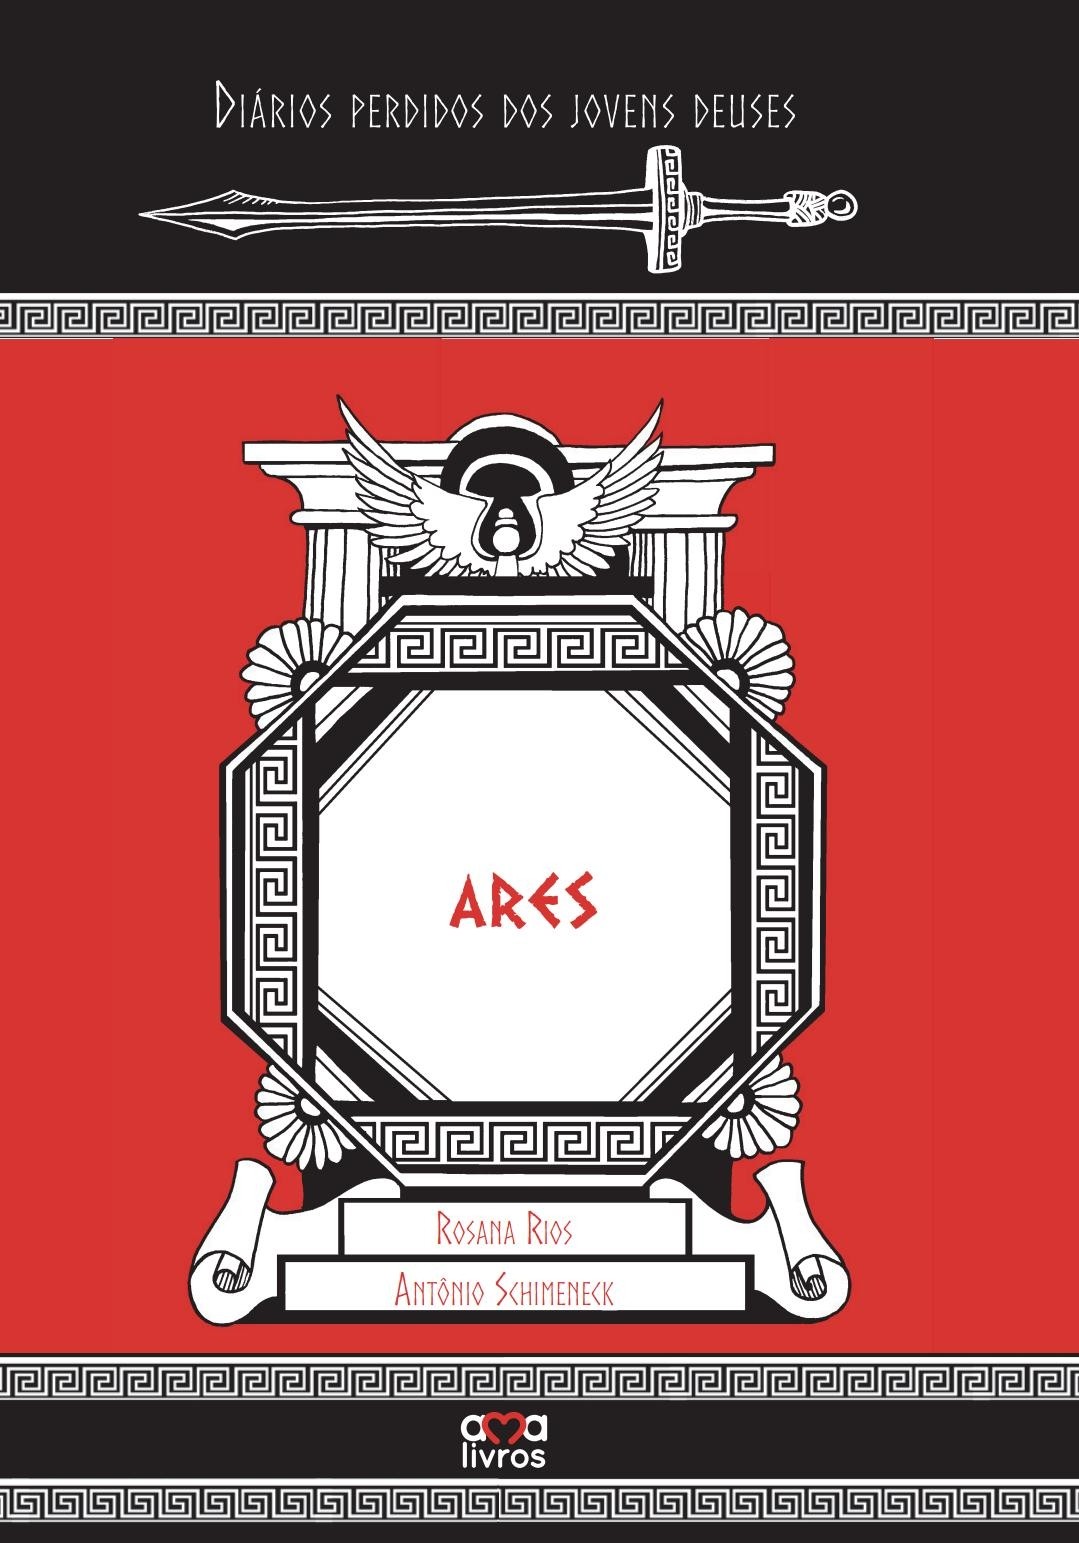 Ares - Diários perdidos dos jovens deuses